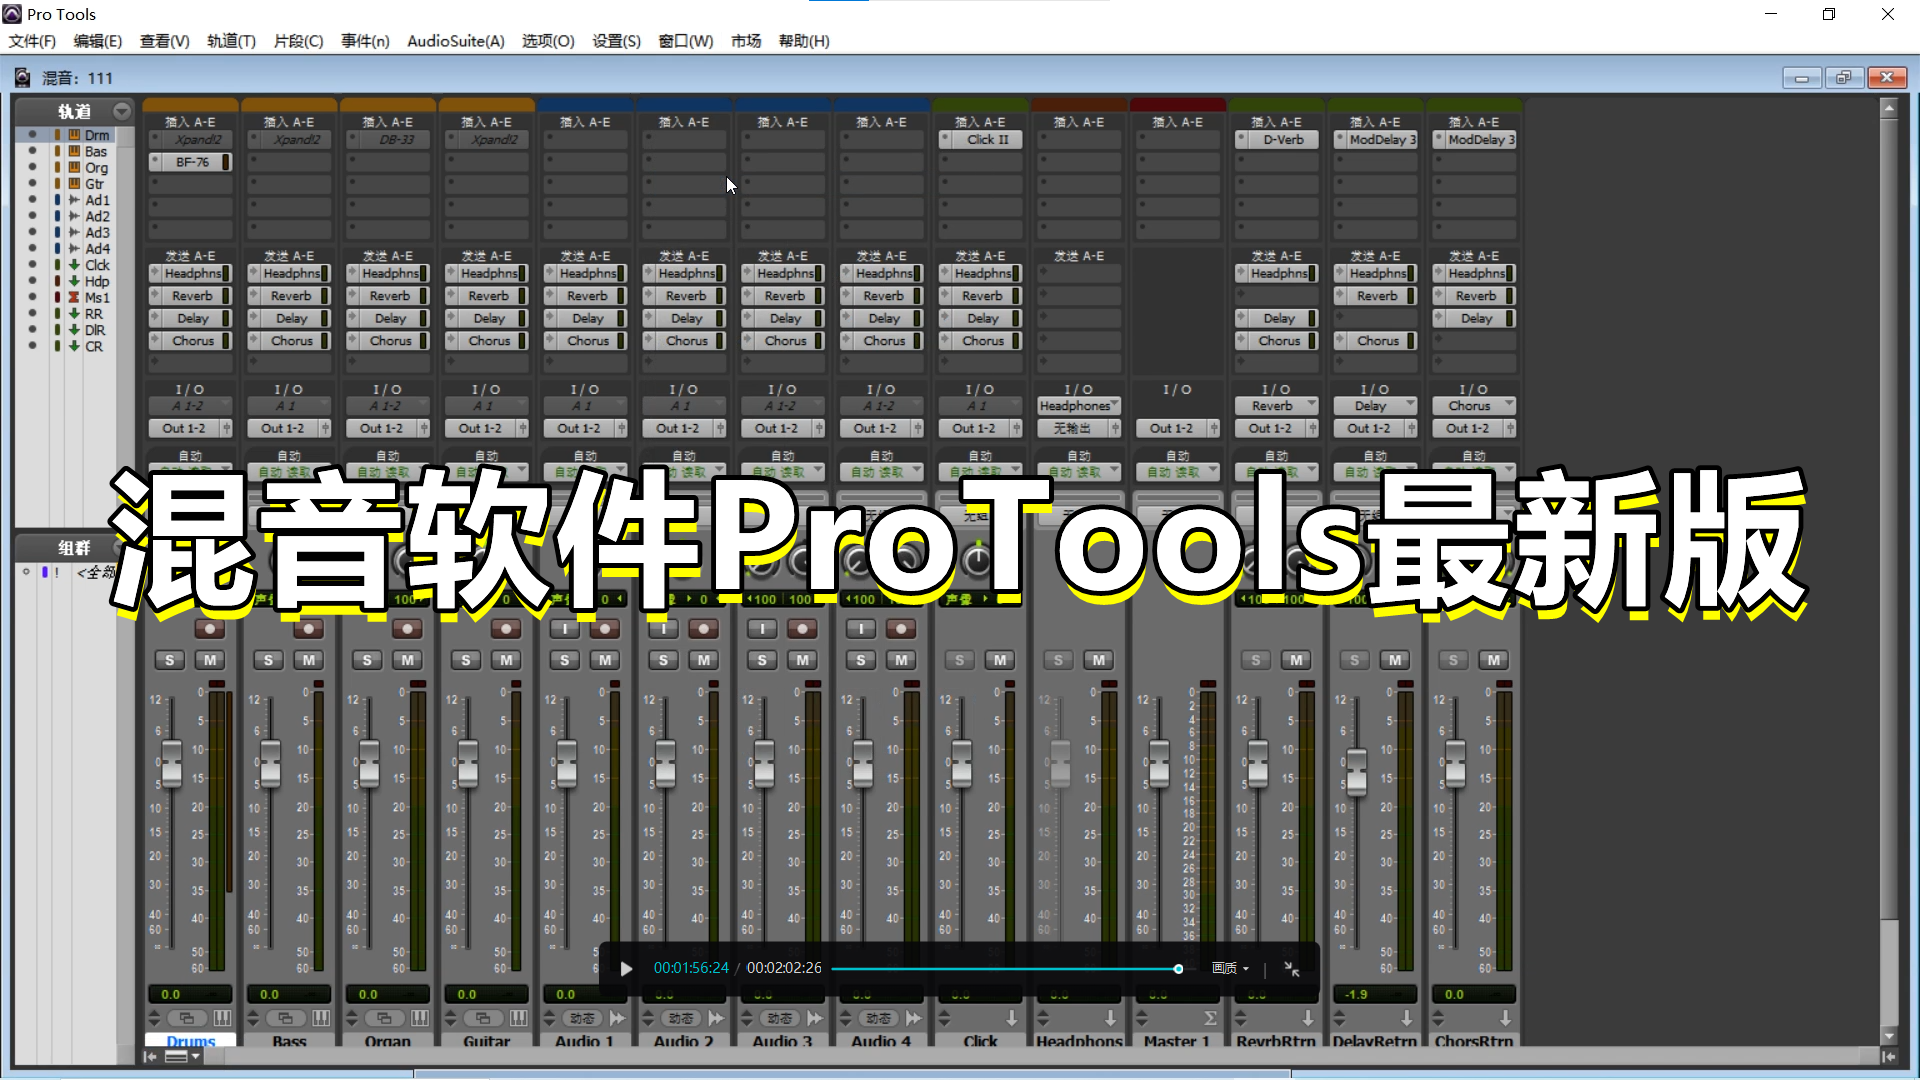 混音最强宿主软件ProTools最新版 + 配套虚拟声卡 + Protools录音与混音必备手册 + 使用教程 – ProTools软件  Windows版